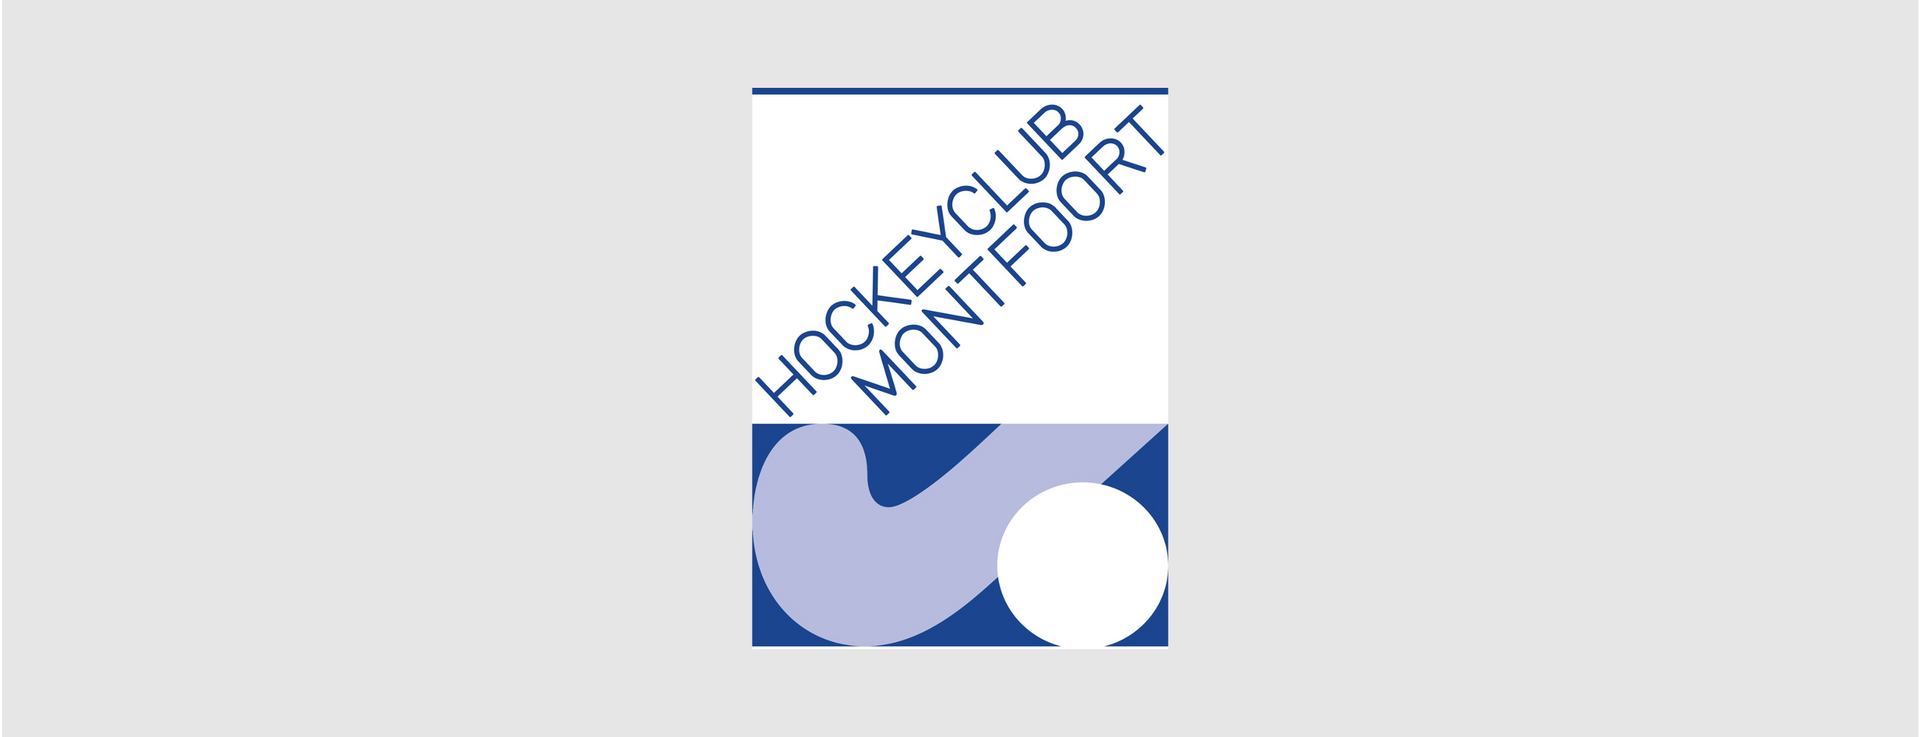 (c) Hockeyclubmontfoort.nl